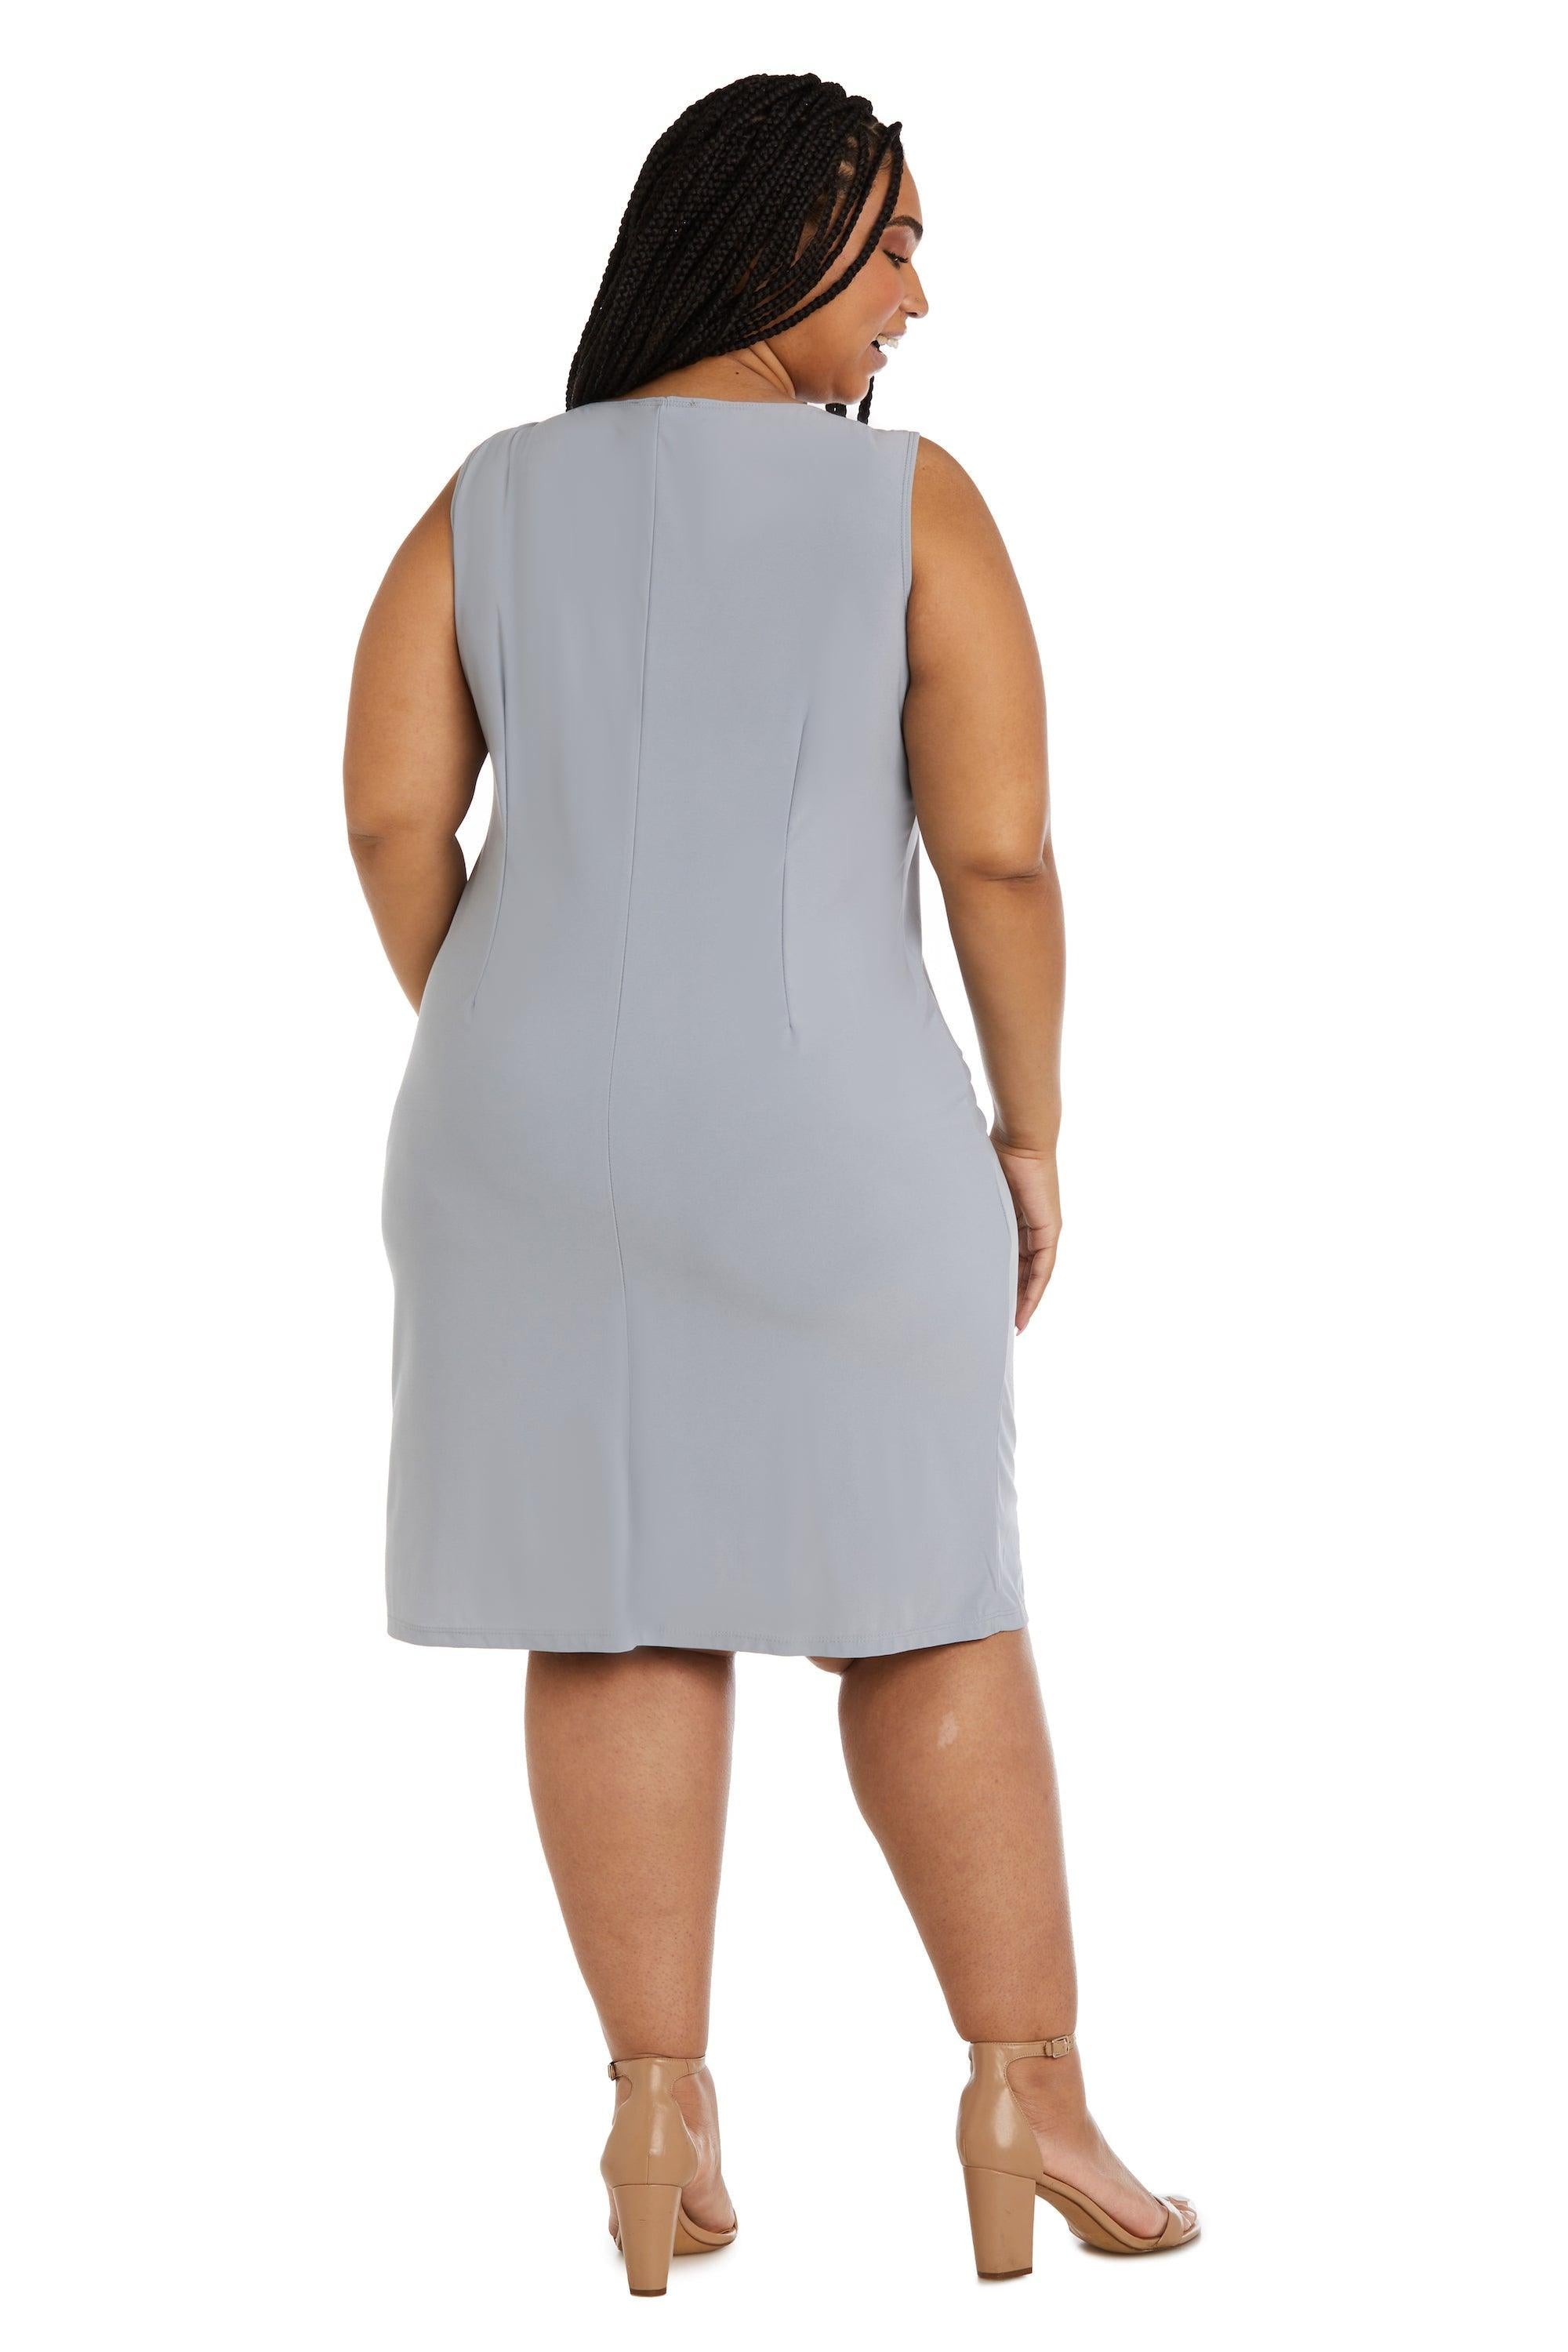 R&M Richards Short Plus Size Jacket Dress 2342W - The Dress Outlet